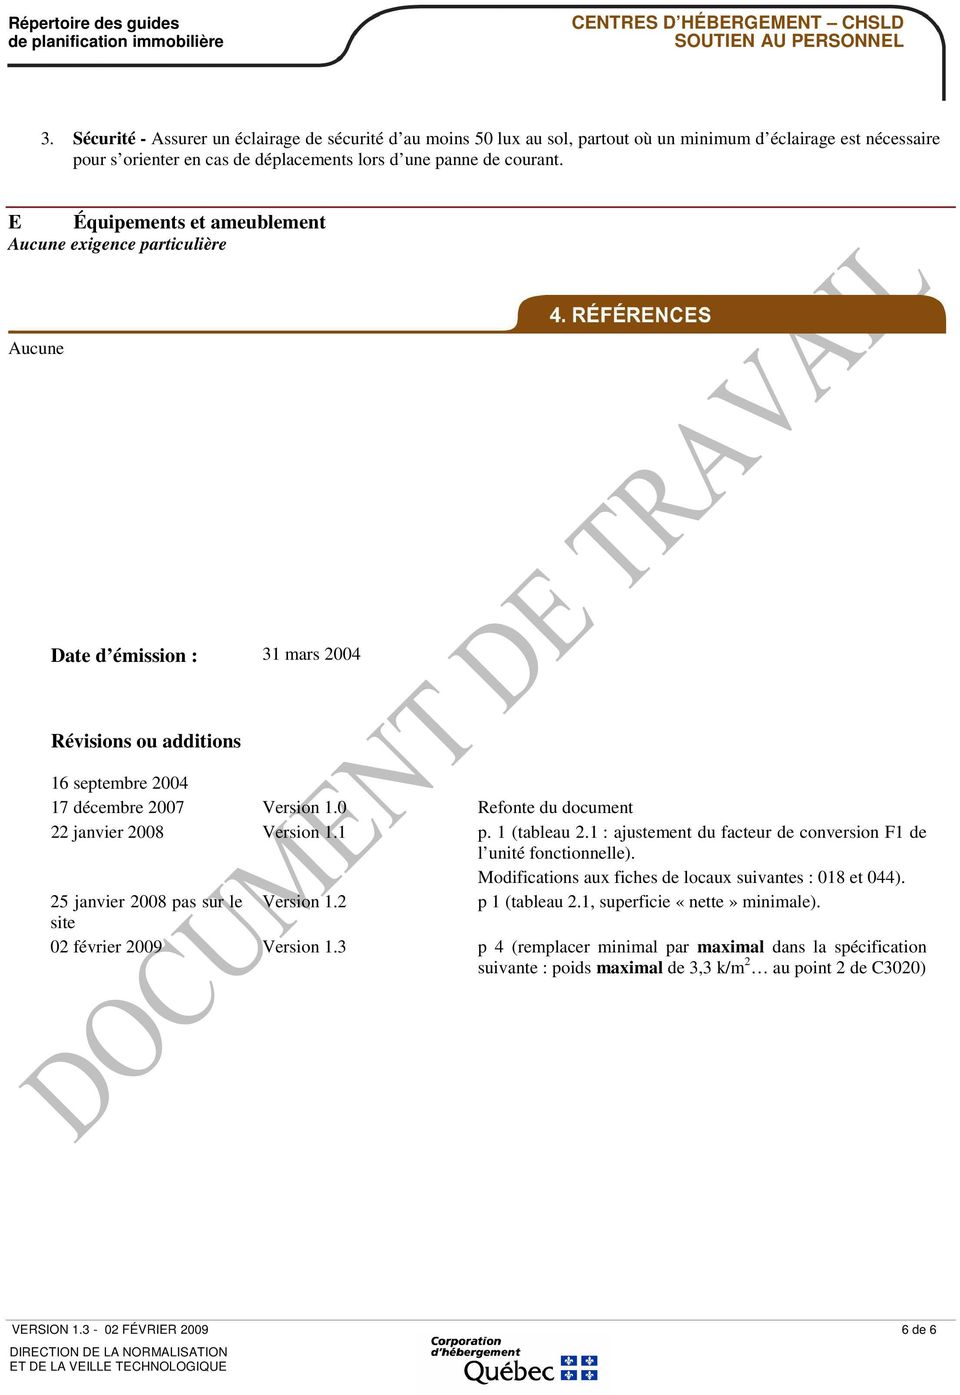 0 Refonte du document 22 janvier 2008 Version 1.1 p. 1 (tableau 2.1 : ajustement du facteur de conversion F1 de l unité fonctionnelle). Modifications aux fiches de locaux suivantes : 018 et 044).